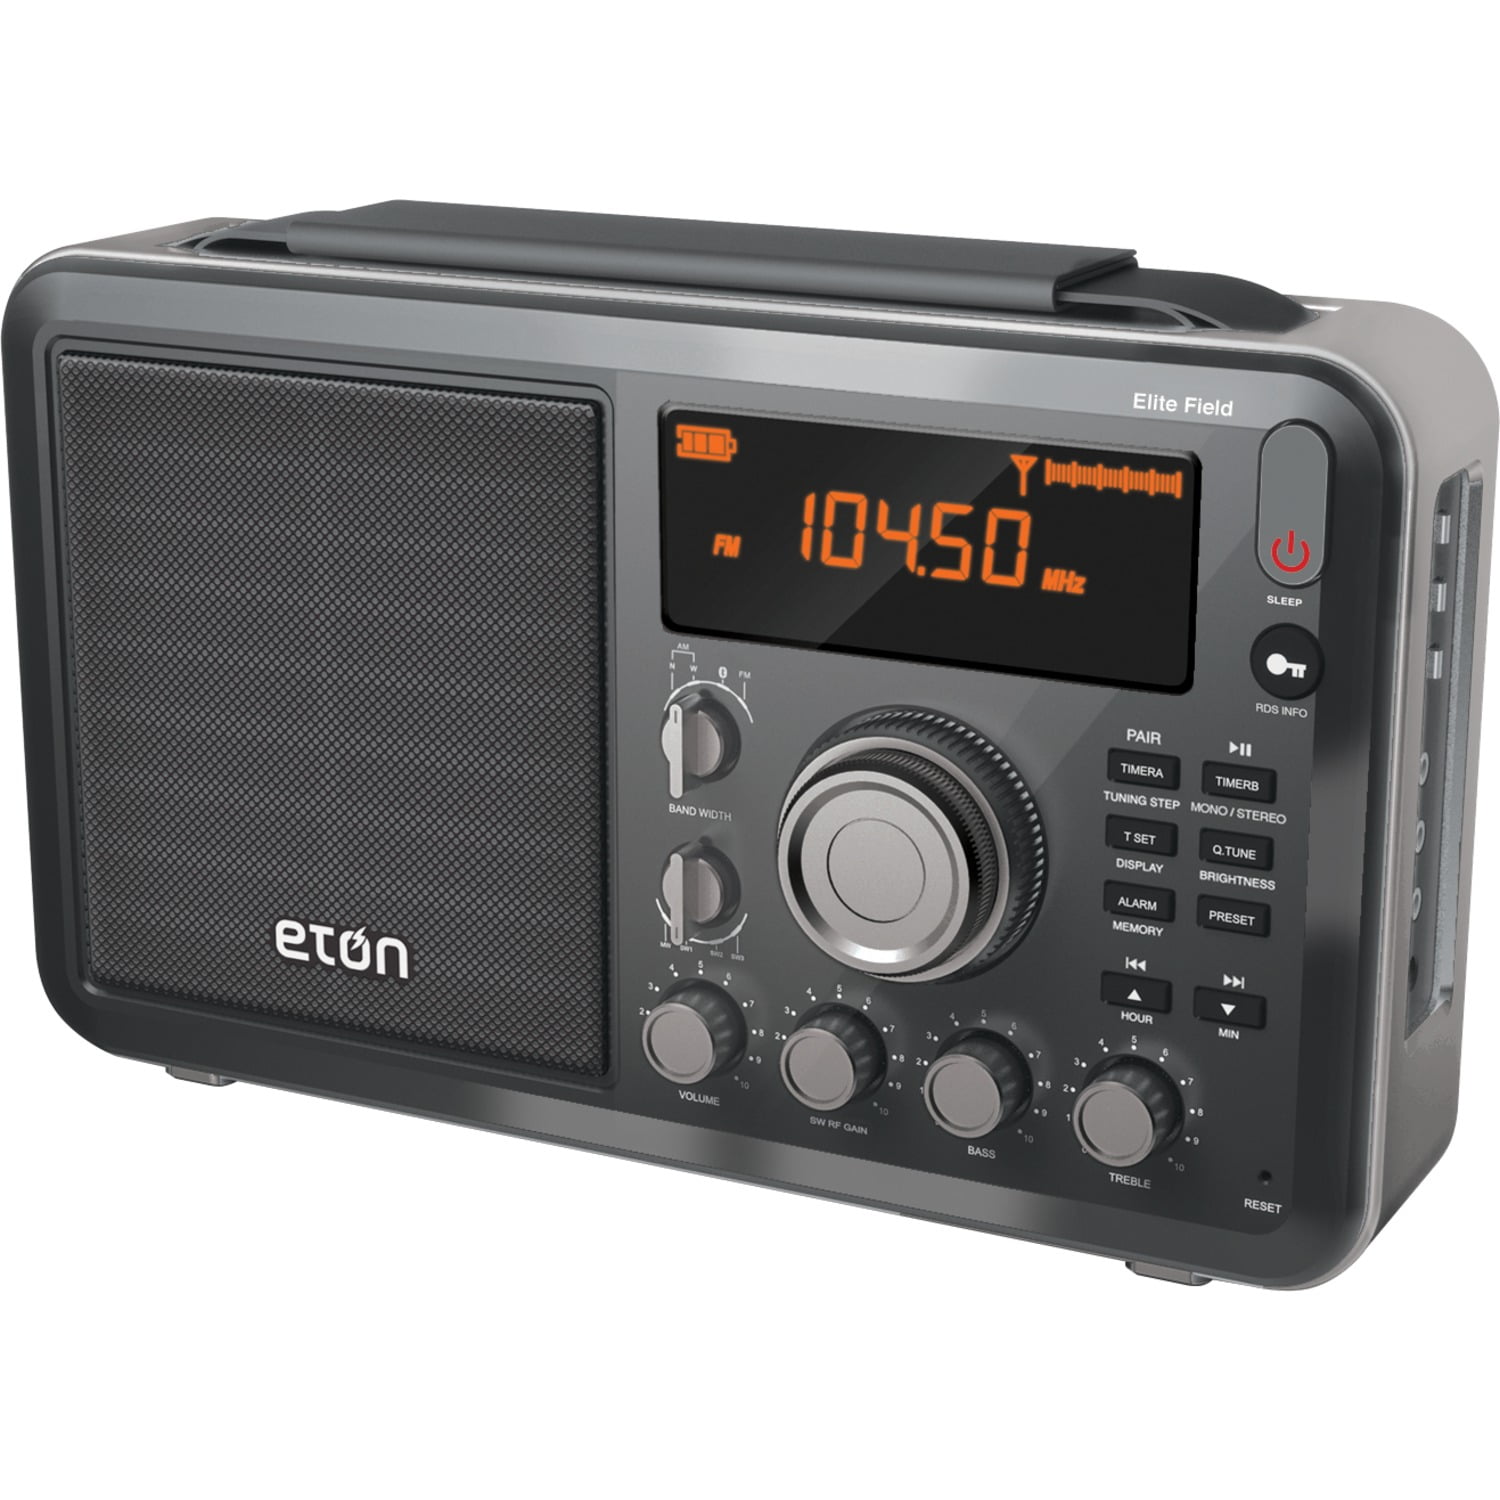 R SANGEAN WR22BK FM-RBDS/AM/USB Bluetooth Digital Tabletop Radio with Remote 